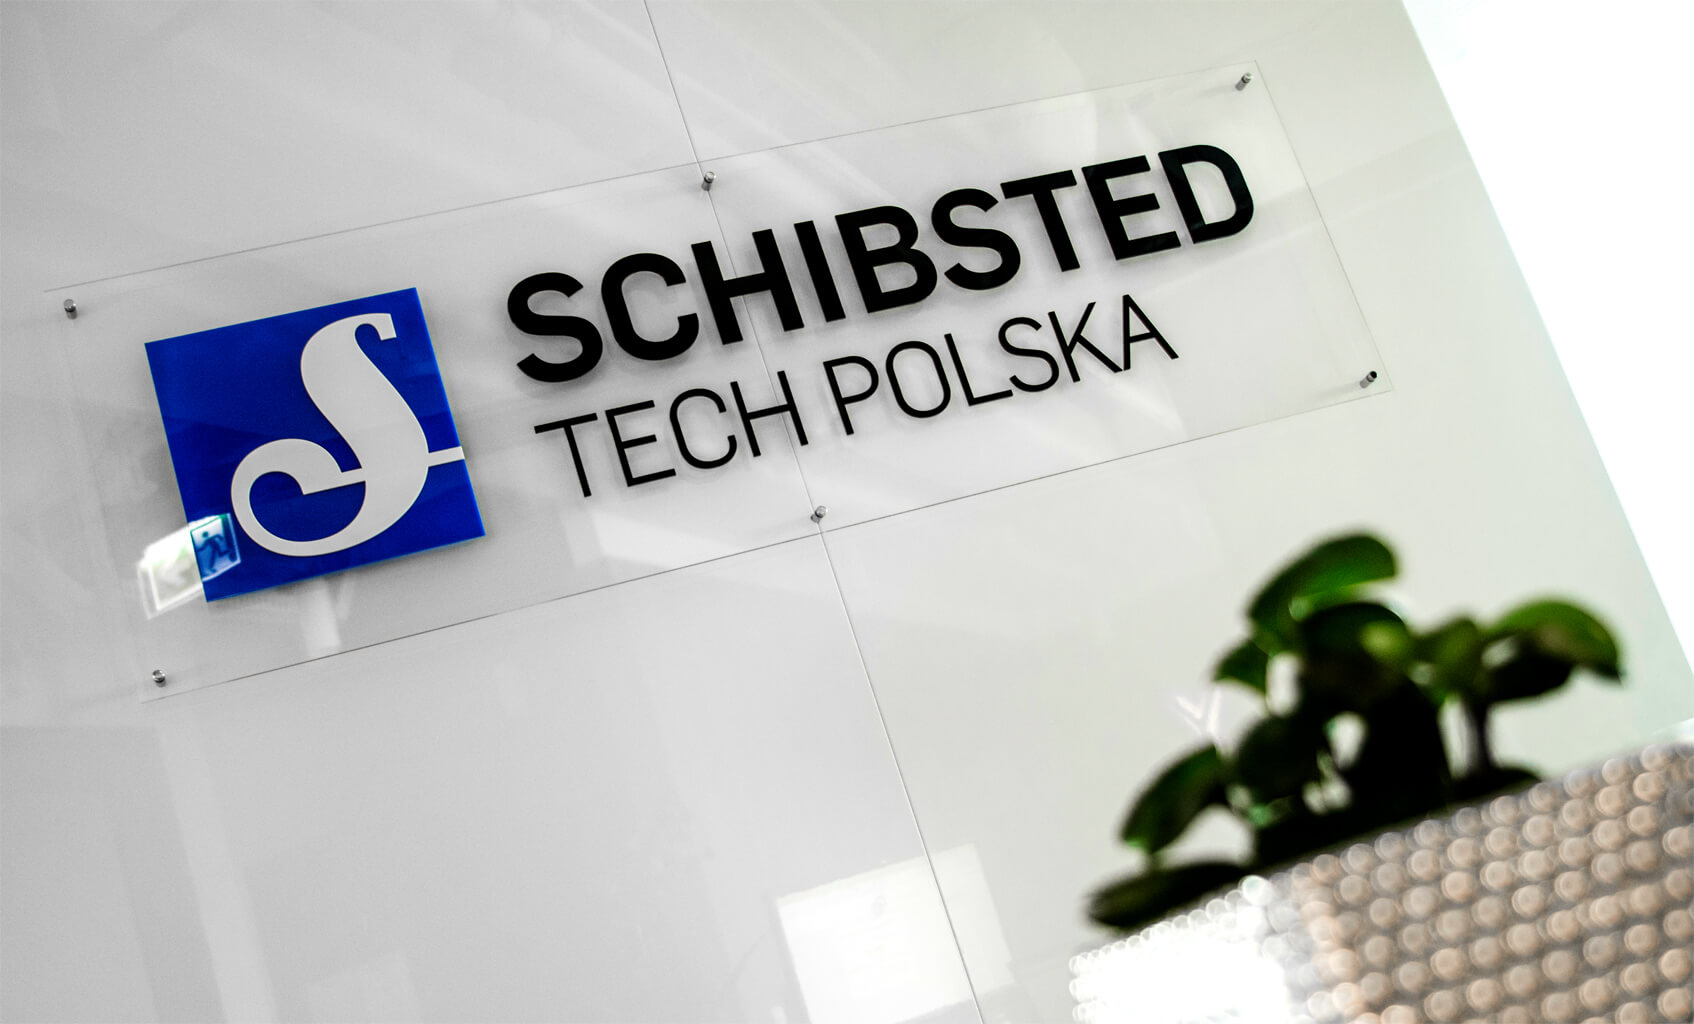 Schibsted Tech Pologne  - Schibsted Tech Poland - Logo 3D et lettres 3D sur support en plexiglas montés sur des entretoises dans la zone de réception.